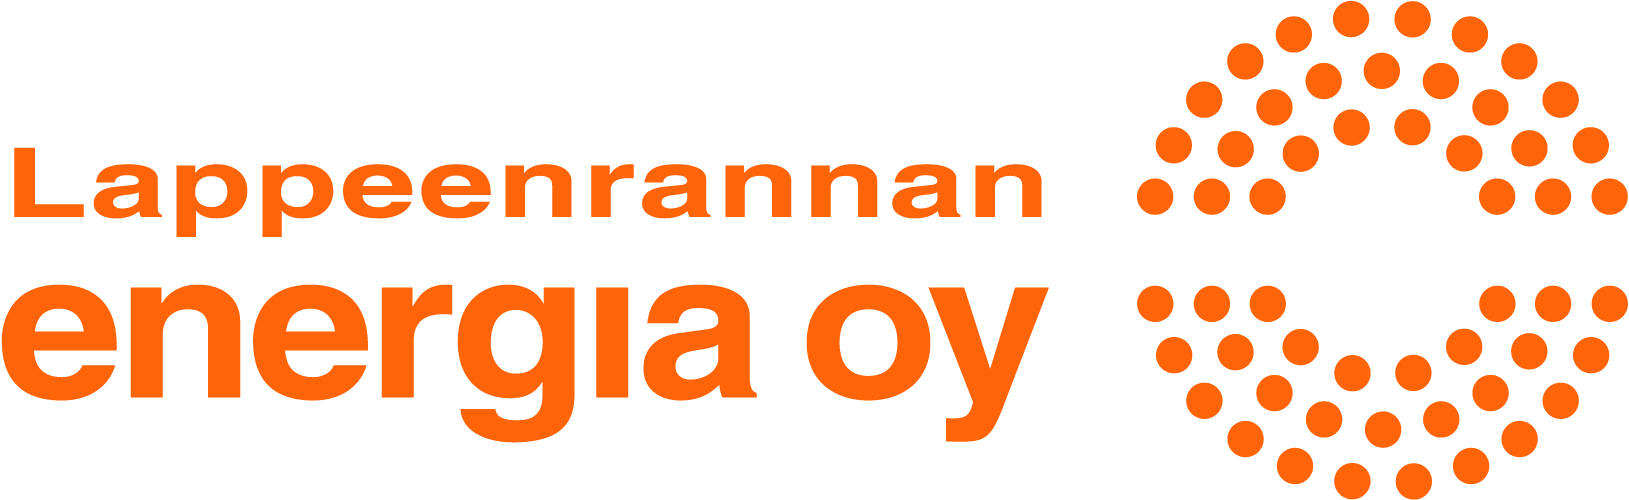 Lappeenrannan Energia Oy -logo.